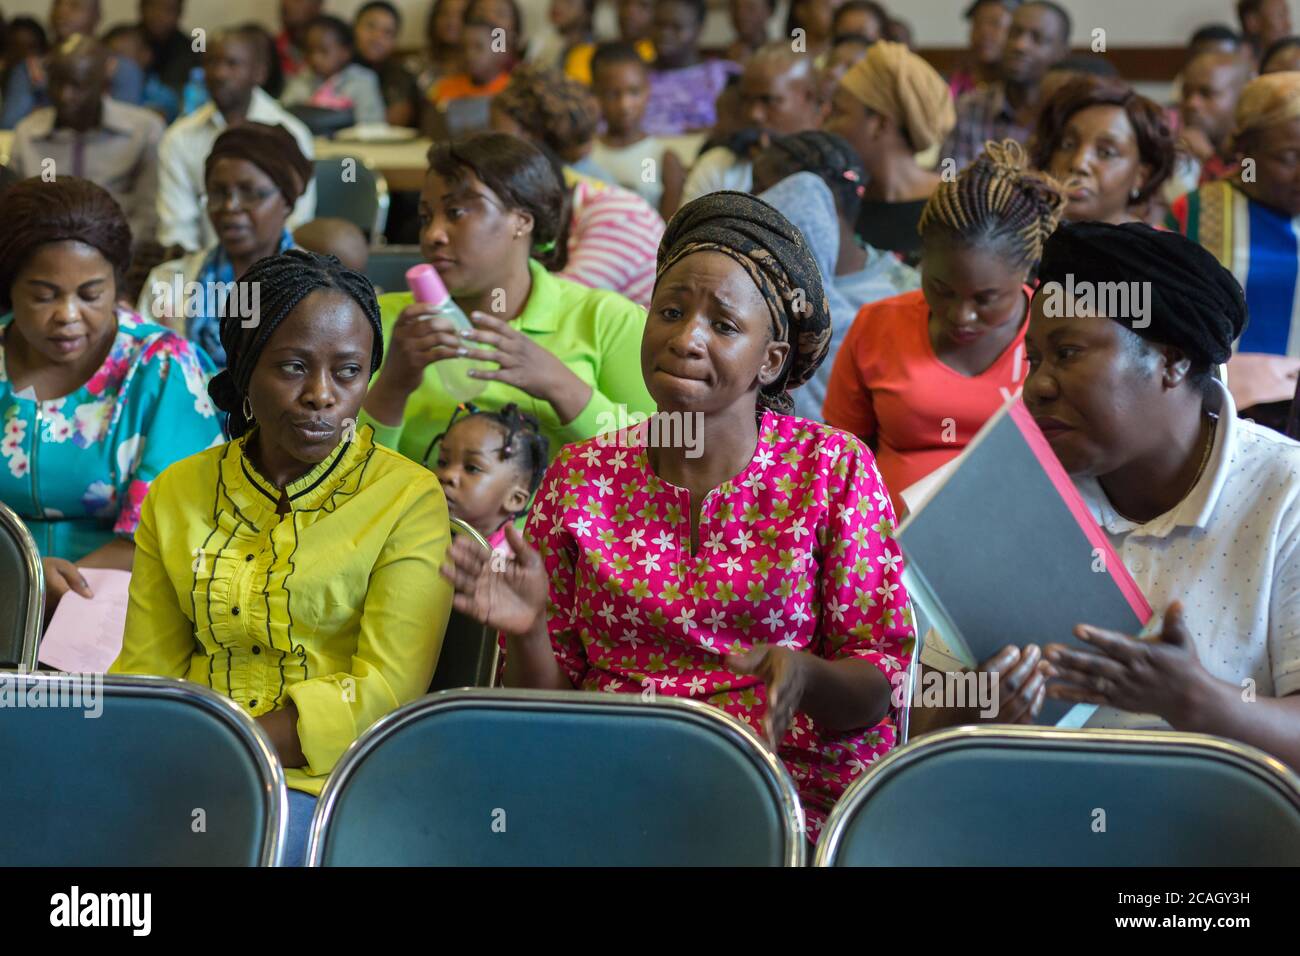 20.10.2018, Pretoria, Gauteng, Sudafrica - Servizio ai rifugiati in una sala riunioni della Chiesa di San Pietro Pretoria. Il partner del progetto è l'Evangelic Foto Stock